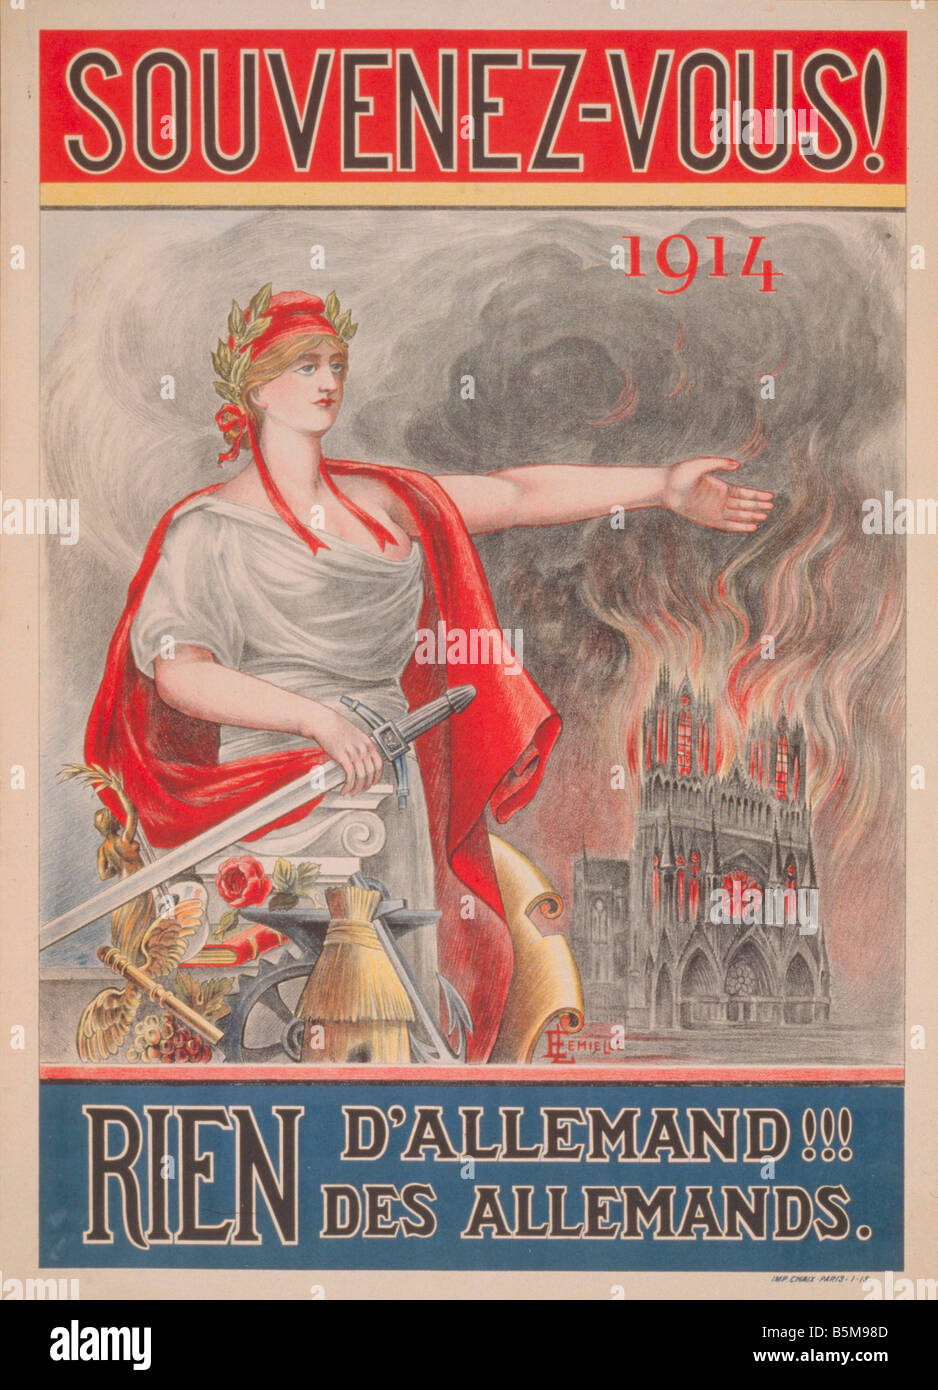 2 G55 P1 1914 95 WW I Souvenez vous 1914 French Poster History World War I Propaganda SOUVENEZ VOUS 1914 RIEN d Alle mand RIEN d Stock Photo